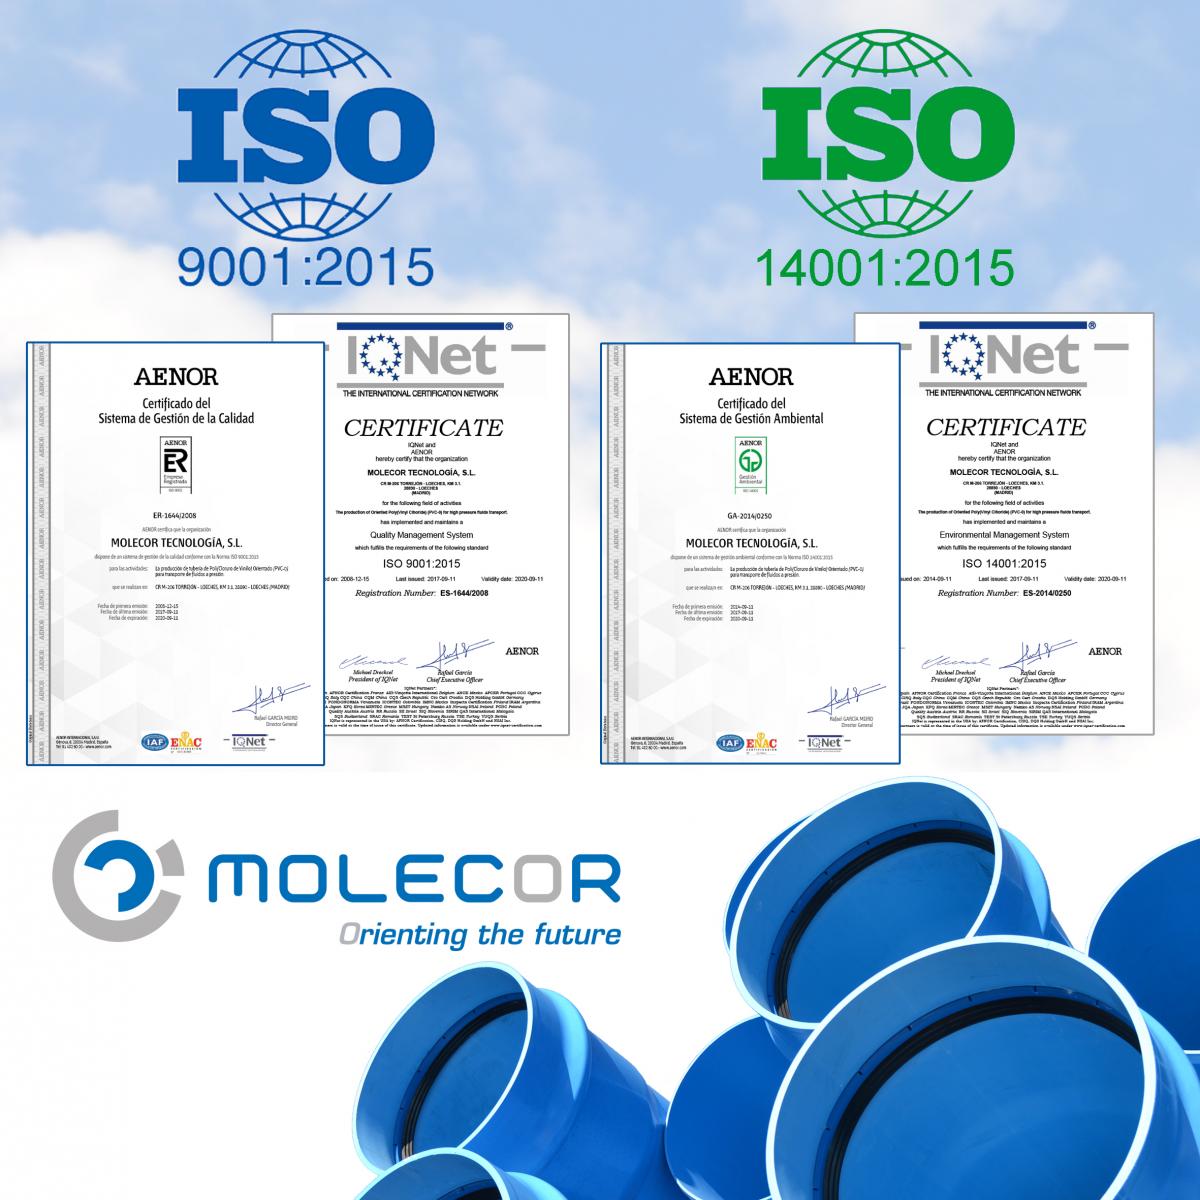 Molecor использует систему интегрального контроля (Качества, Окружающей Среды и Профилактики), основанную на нормативах UNE-EN ISO 9001:2015 и UNE-EN ISO 14001:2015, целью которых является постоянный поиск достижения улучшенных результатов в работе предприятия. Внедрение системы интегрального контроля демонстрирует способность компании Molecor предлагать на рынке продукцию, отвечающую повышенным требованиям клиентов и техническим регламентам.  В процессе постоянного развития, Molecor закончила процесс внедрения новой системы и получила обновлённый сертификат AENOR, соответствующий обновлённым нормативам. Обновления затрагивают следующие пункты: определение контекста организации, контроль рисков и процессов, лидерство руководства, управления и планирование изменений. Эти новшенства помогут компании Molecor в развитии стратегии, опережая запросы клиентов, обнаружении новых возможностей, принятии быстрых решений и в оптимизации целей и ключевых процессов организации.  Таким образом, внедрение обновления системы является стратегическим решением, которое будет иметь глобальное влияние на организацию, улучшая её функционирование. Новый сертификат подтверждает усилия и проактивность компании Molecor в направлении выхода на международные рынки, создании конструктивной конкуренции в различных секторах рынка, всегда учитывая социальную, экономическую и экологическую составляющую каждого региона.